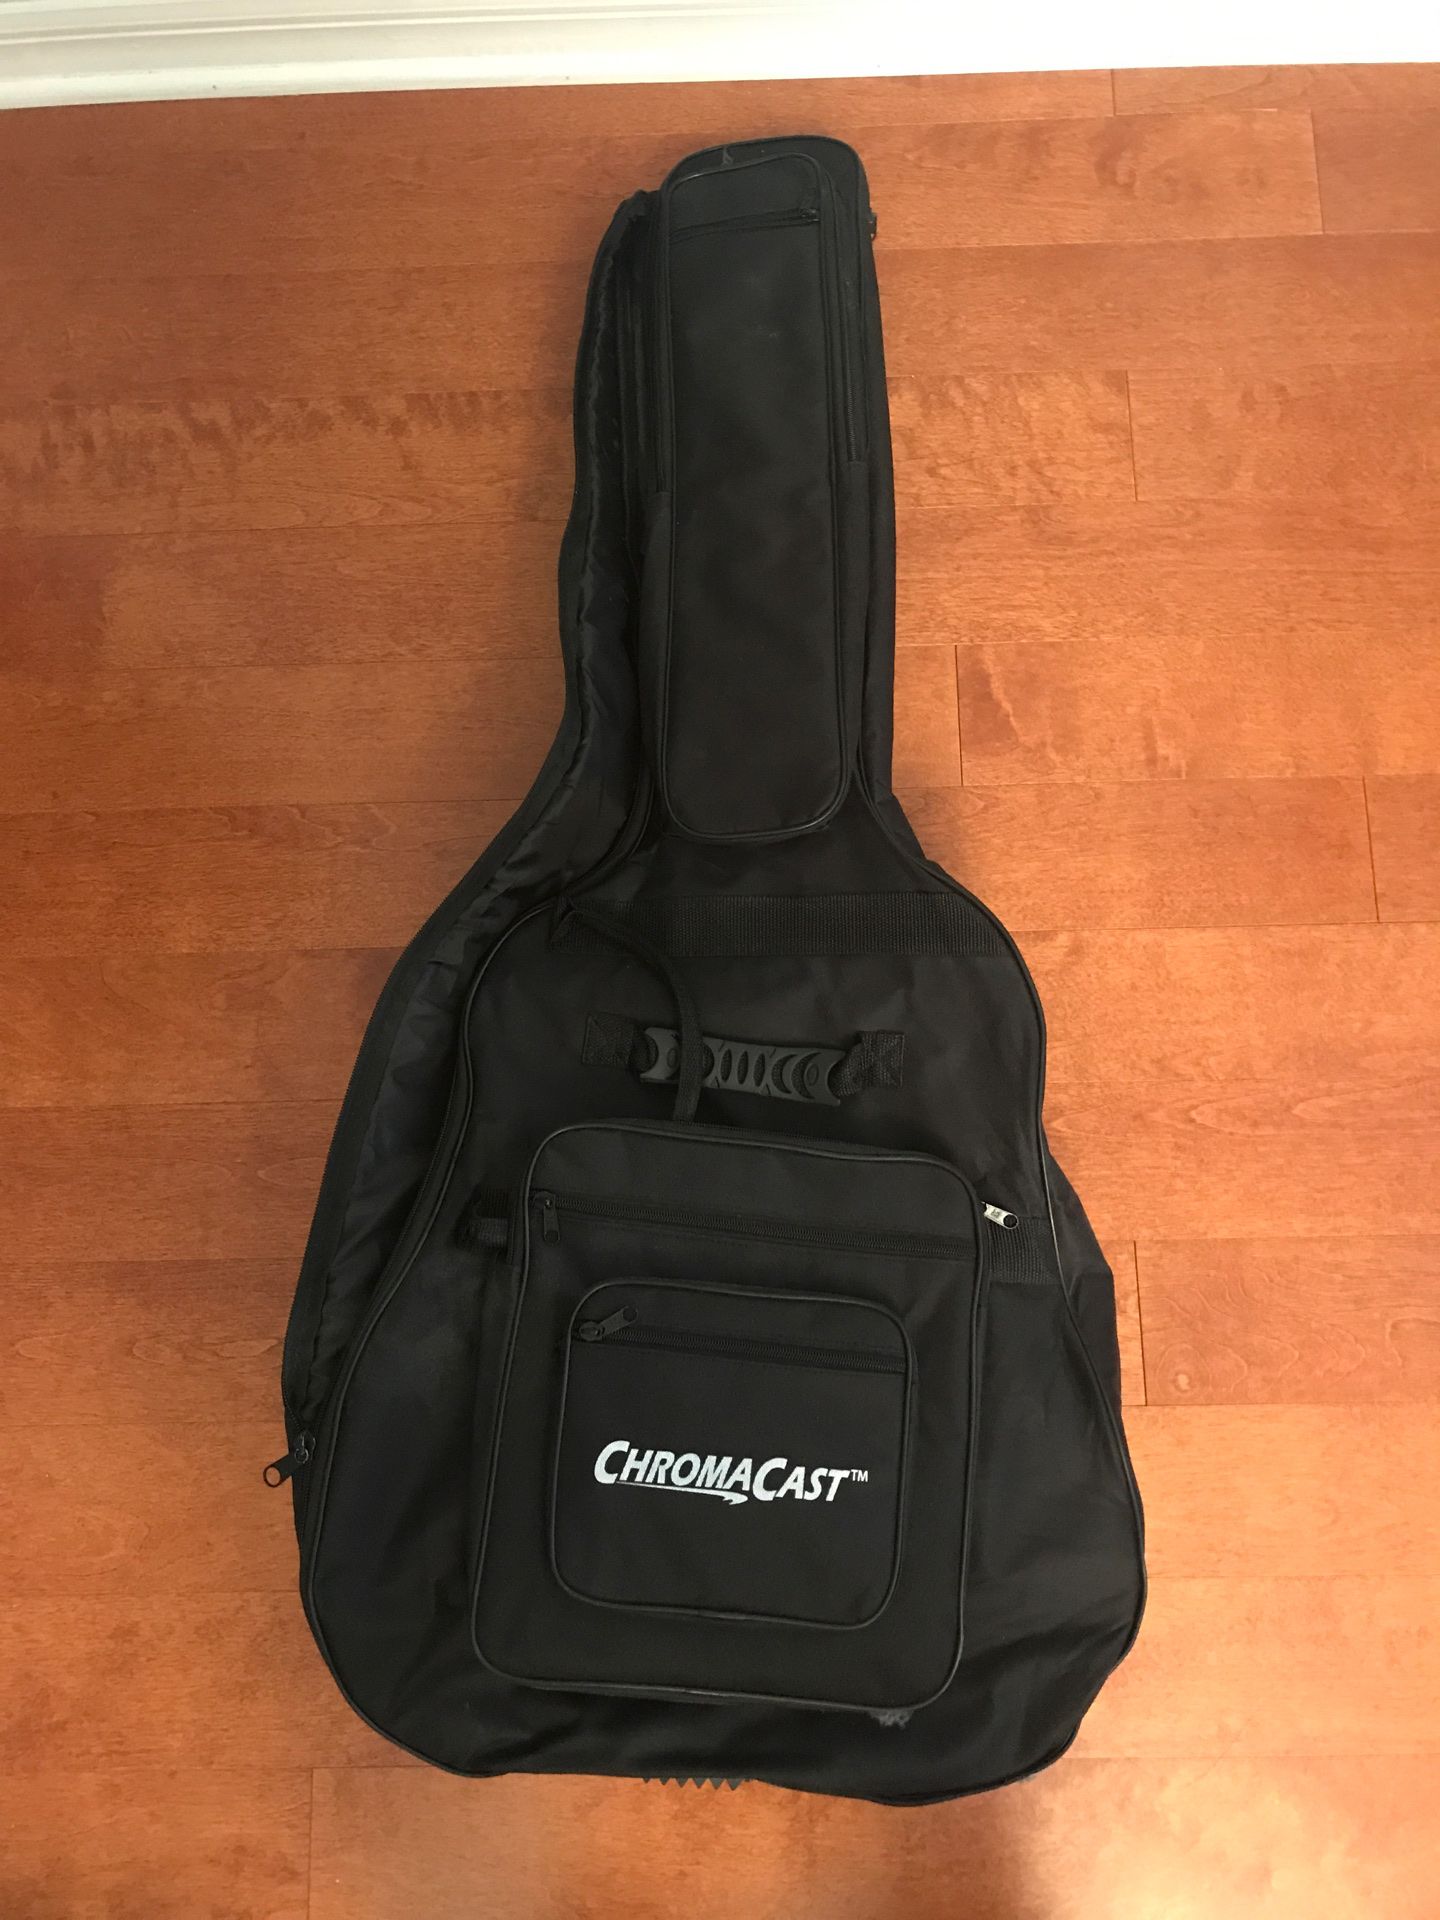 Chromacast guitar bag/case